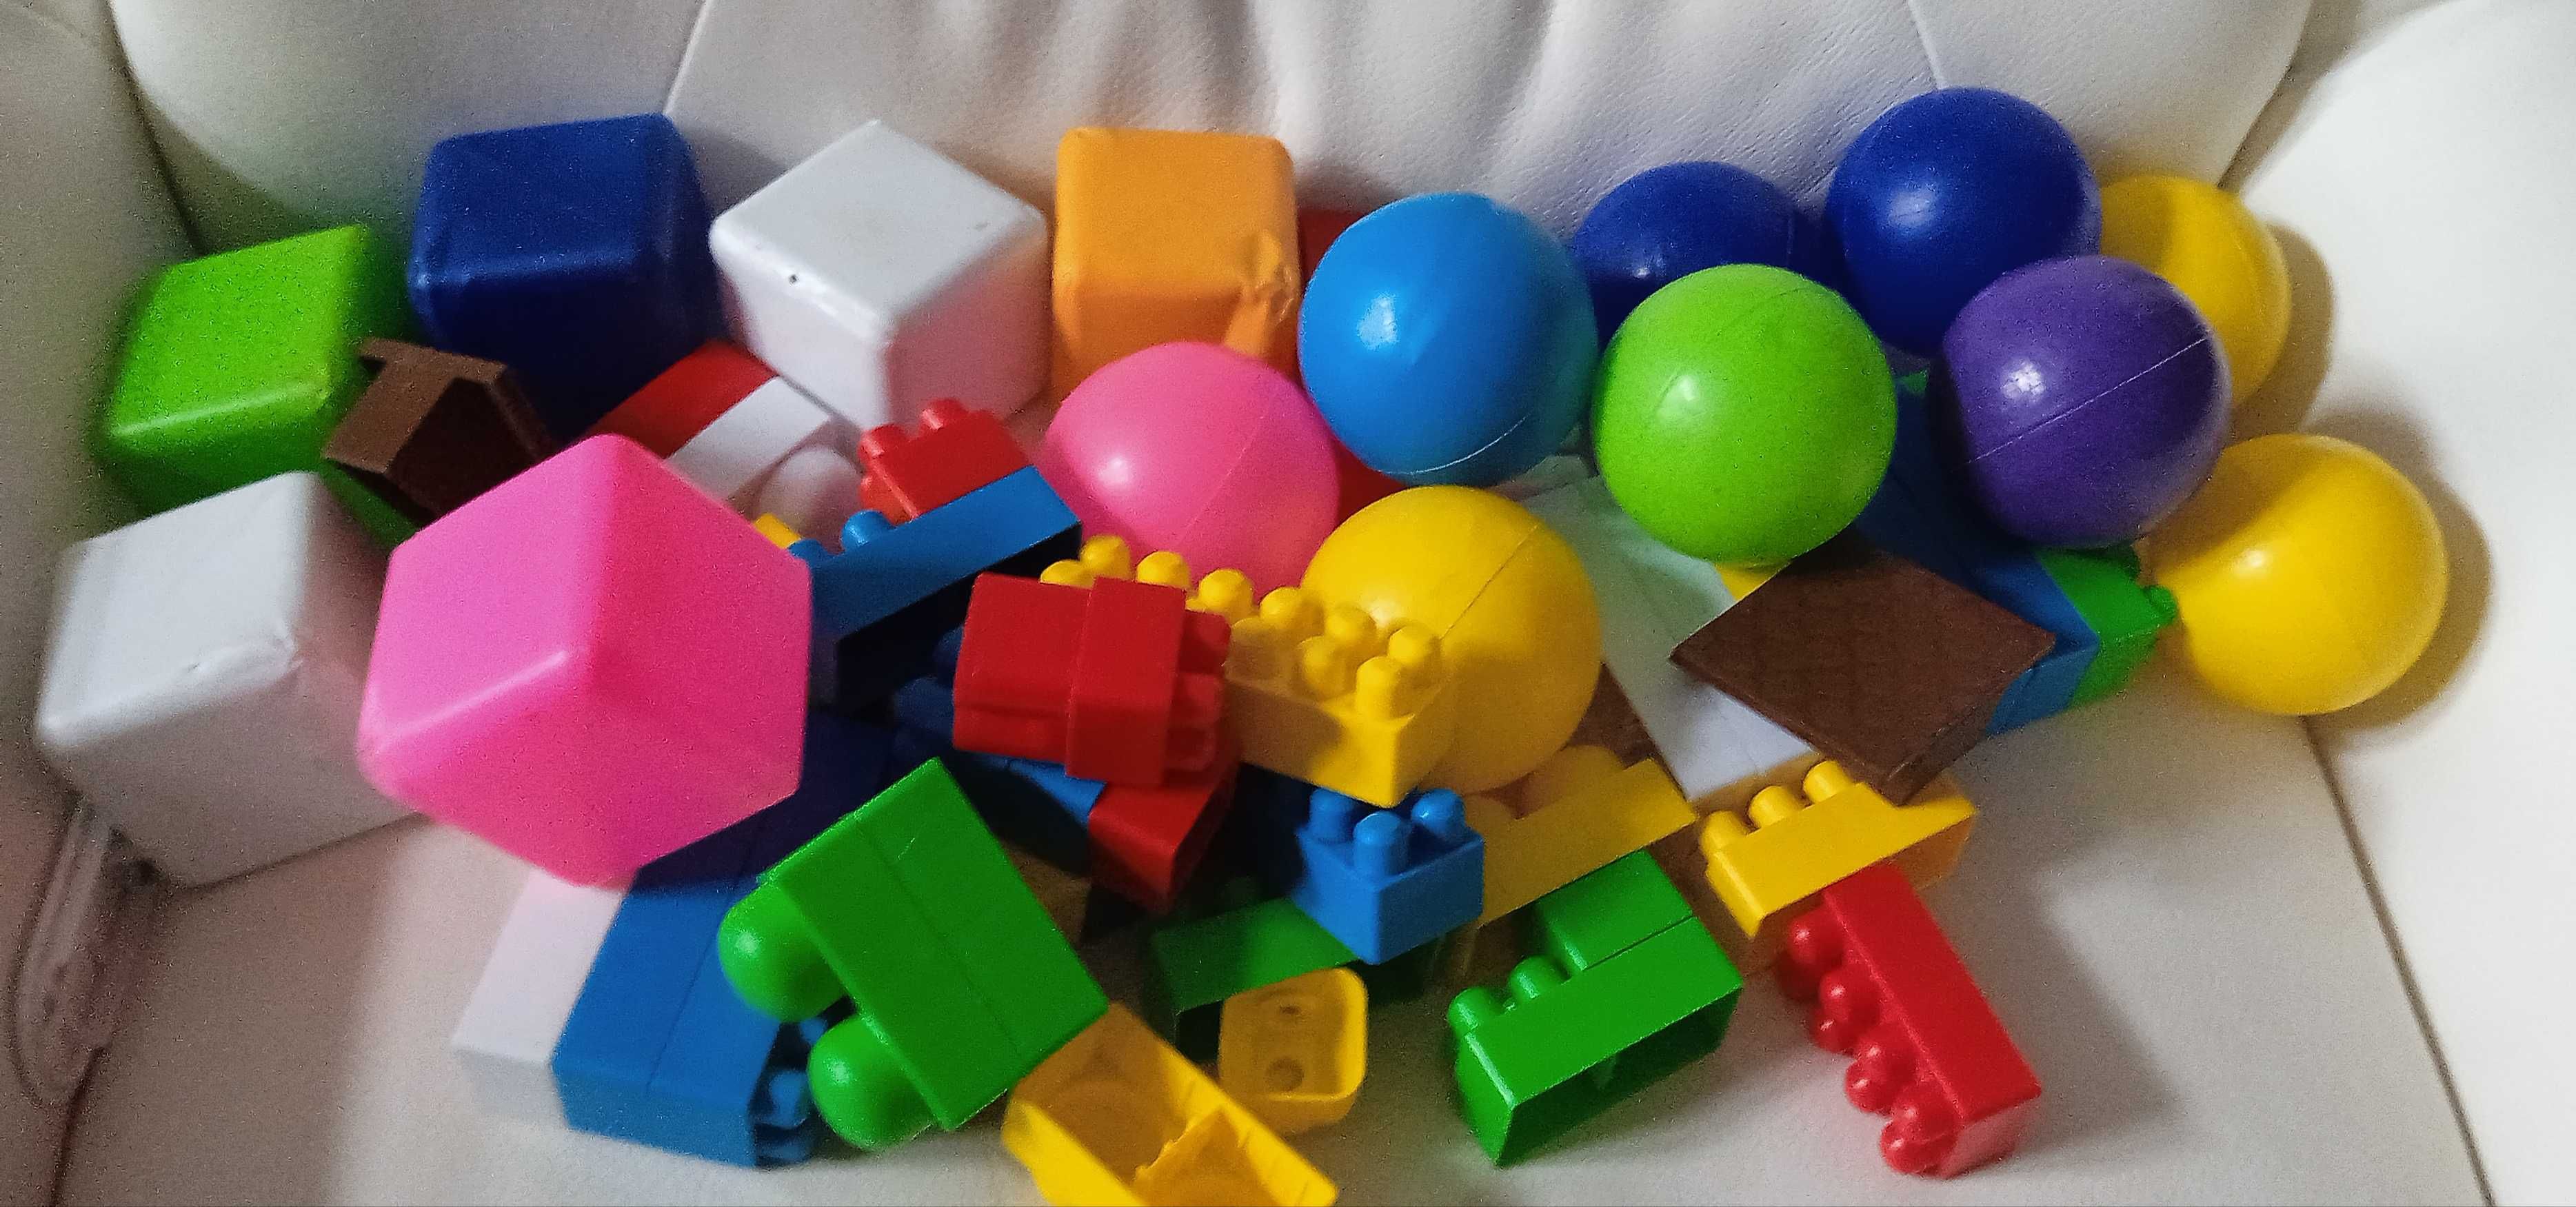 Кубики цветные,мячики цветные, мягкие пазлы животные, конструктор.